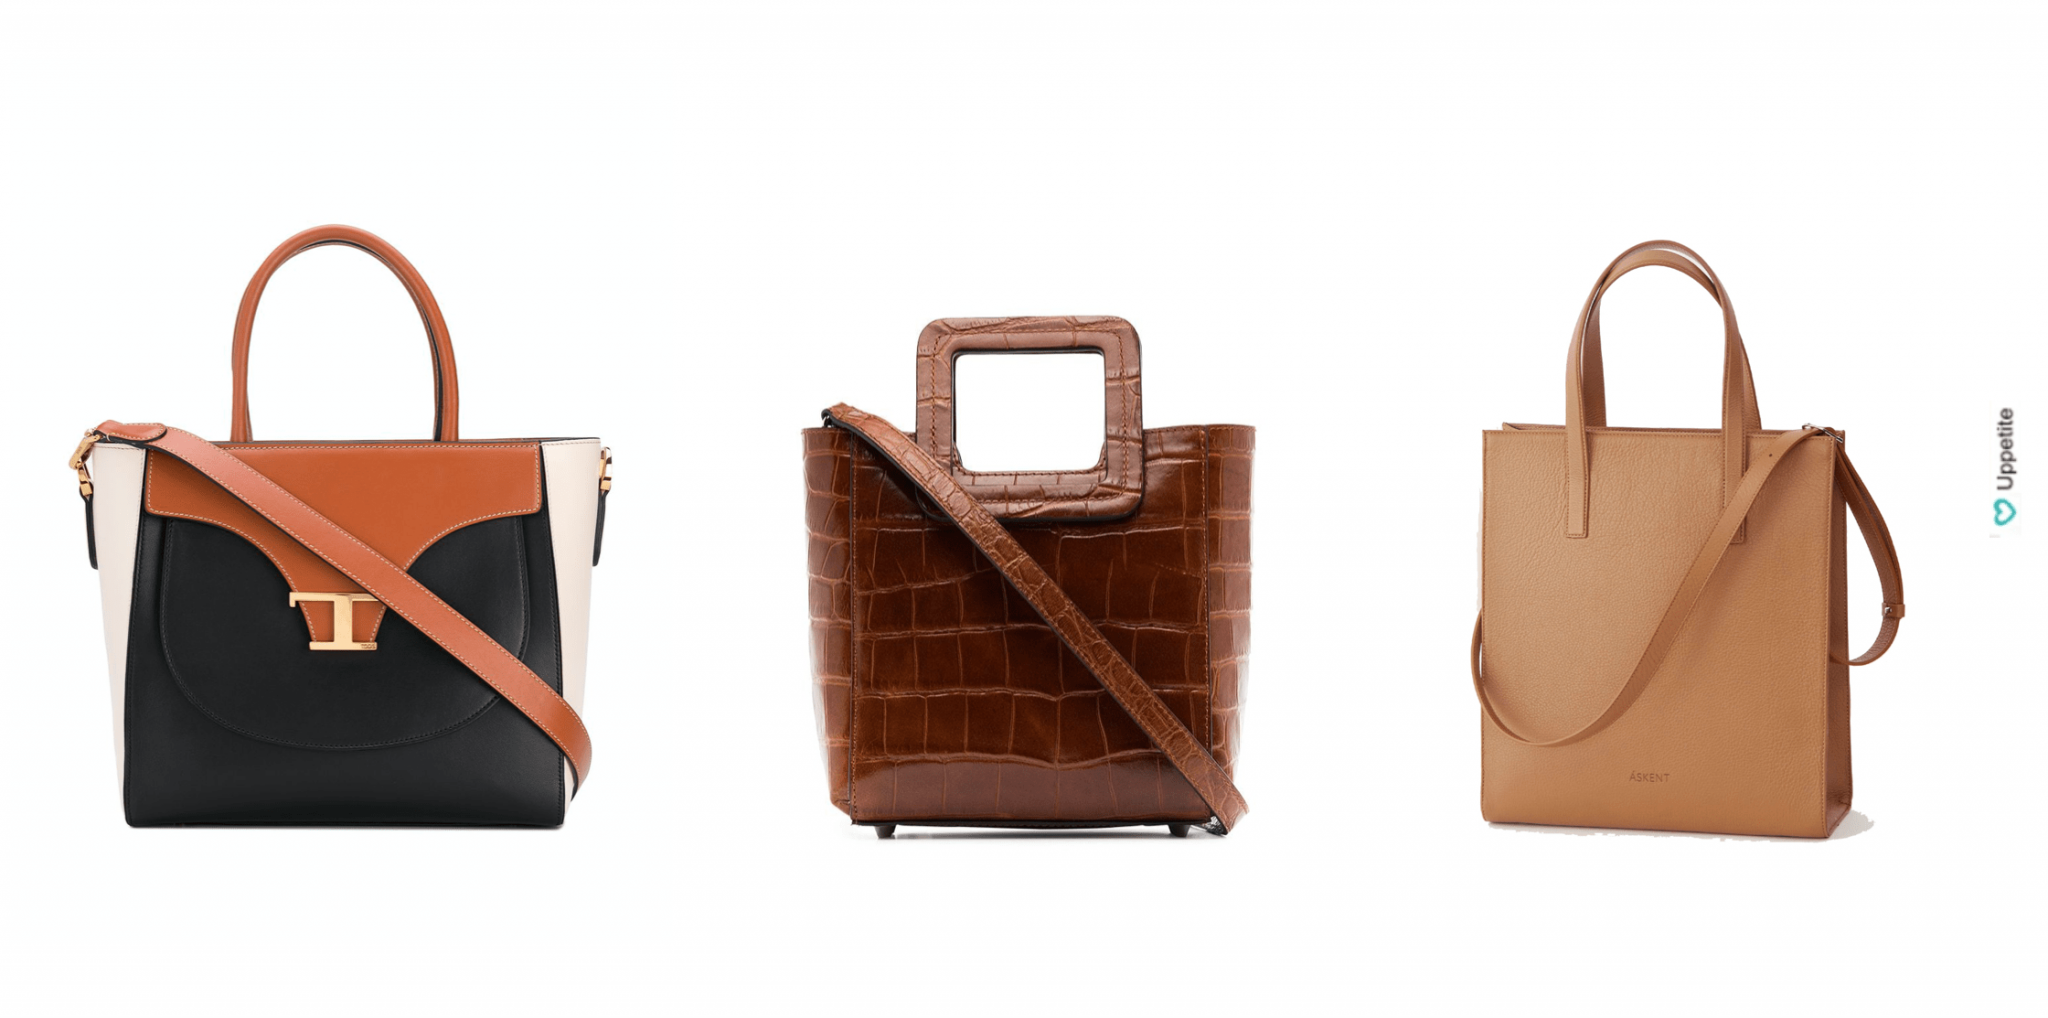 9 модных сумок на весну 2020: какую сумку выбрать, чтобы всегда выглядеть стильно